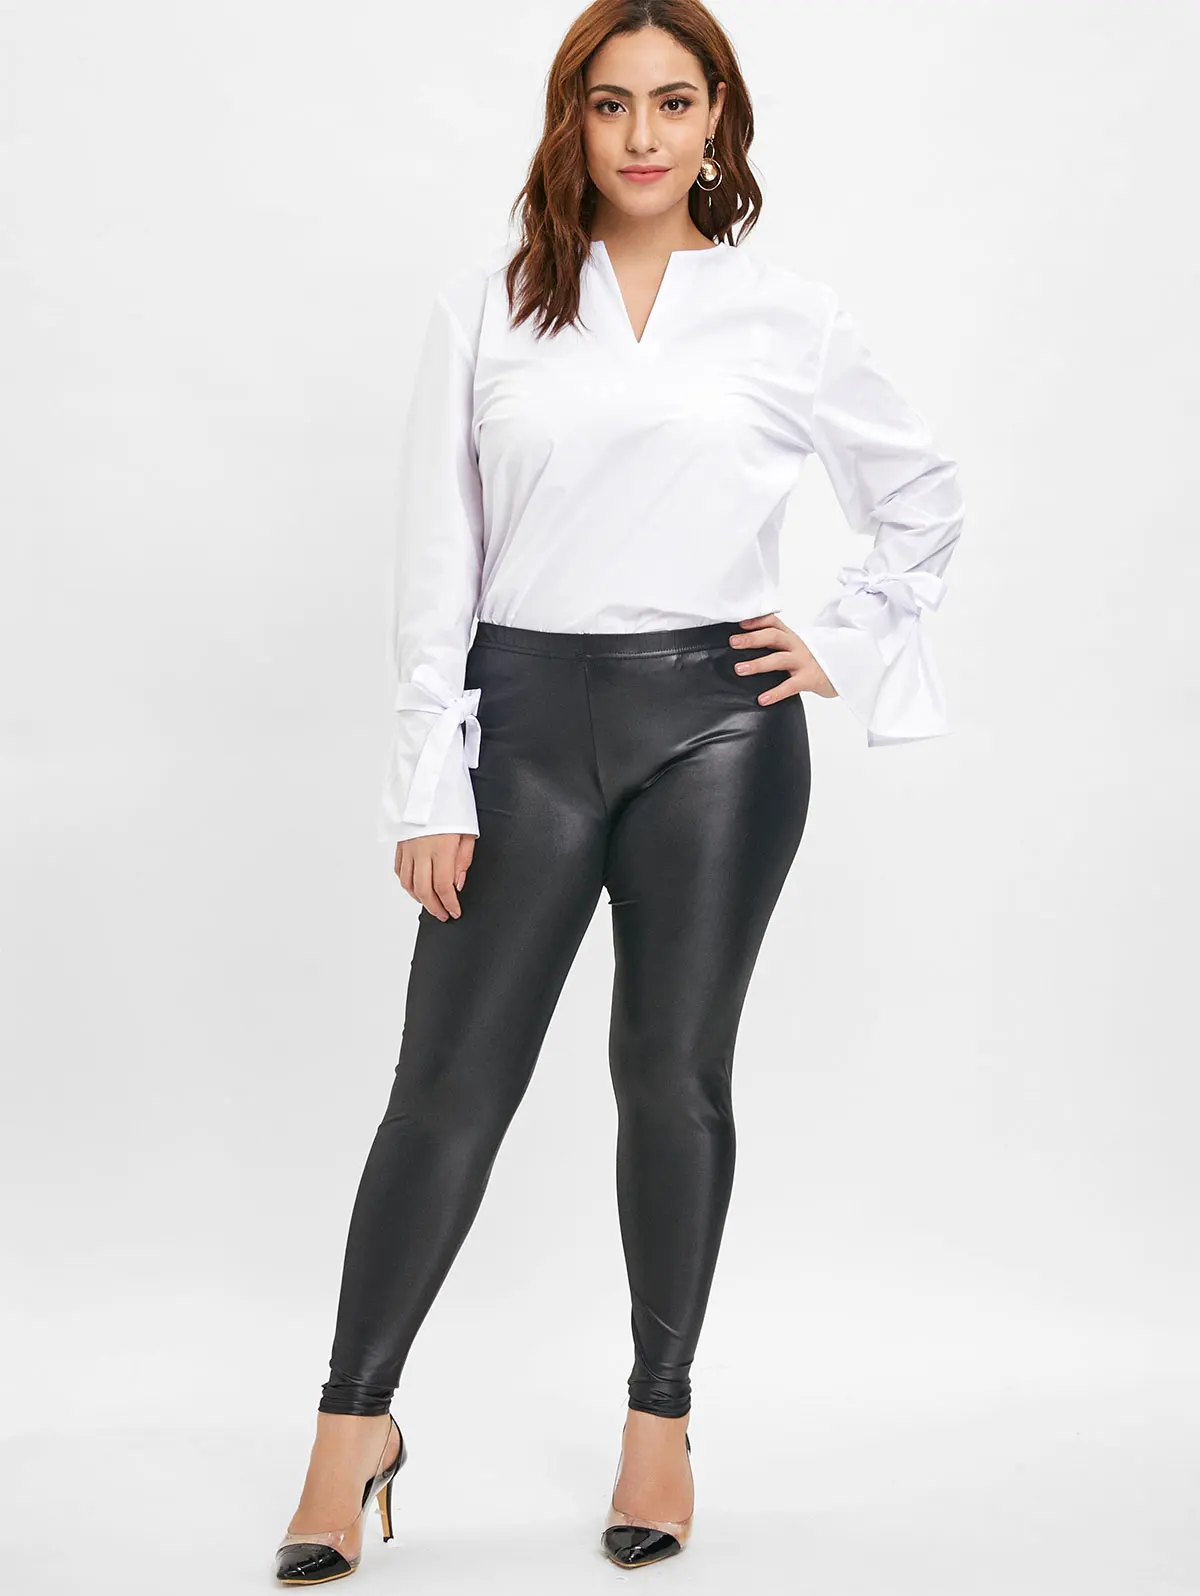 Rosegal, леггинсы из искусственной кожи размера плюс, обтягивающие, с высокой эластичной талией, черные брюки-карандаш, женские сексуальные штаны, джеггинг, эластичные брюки